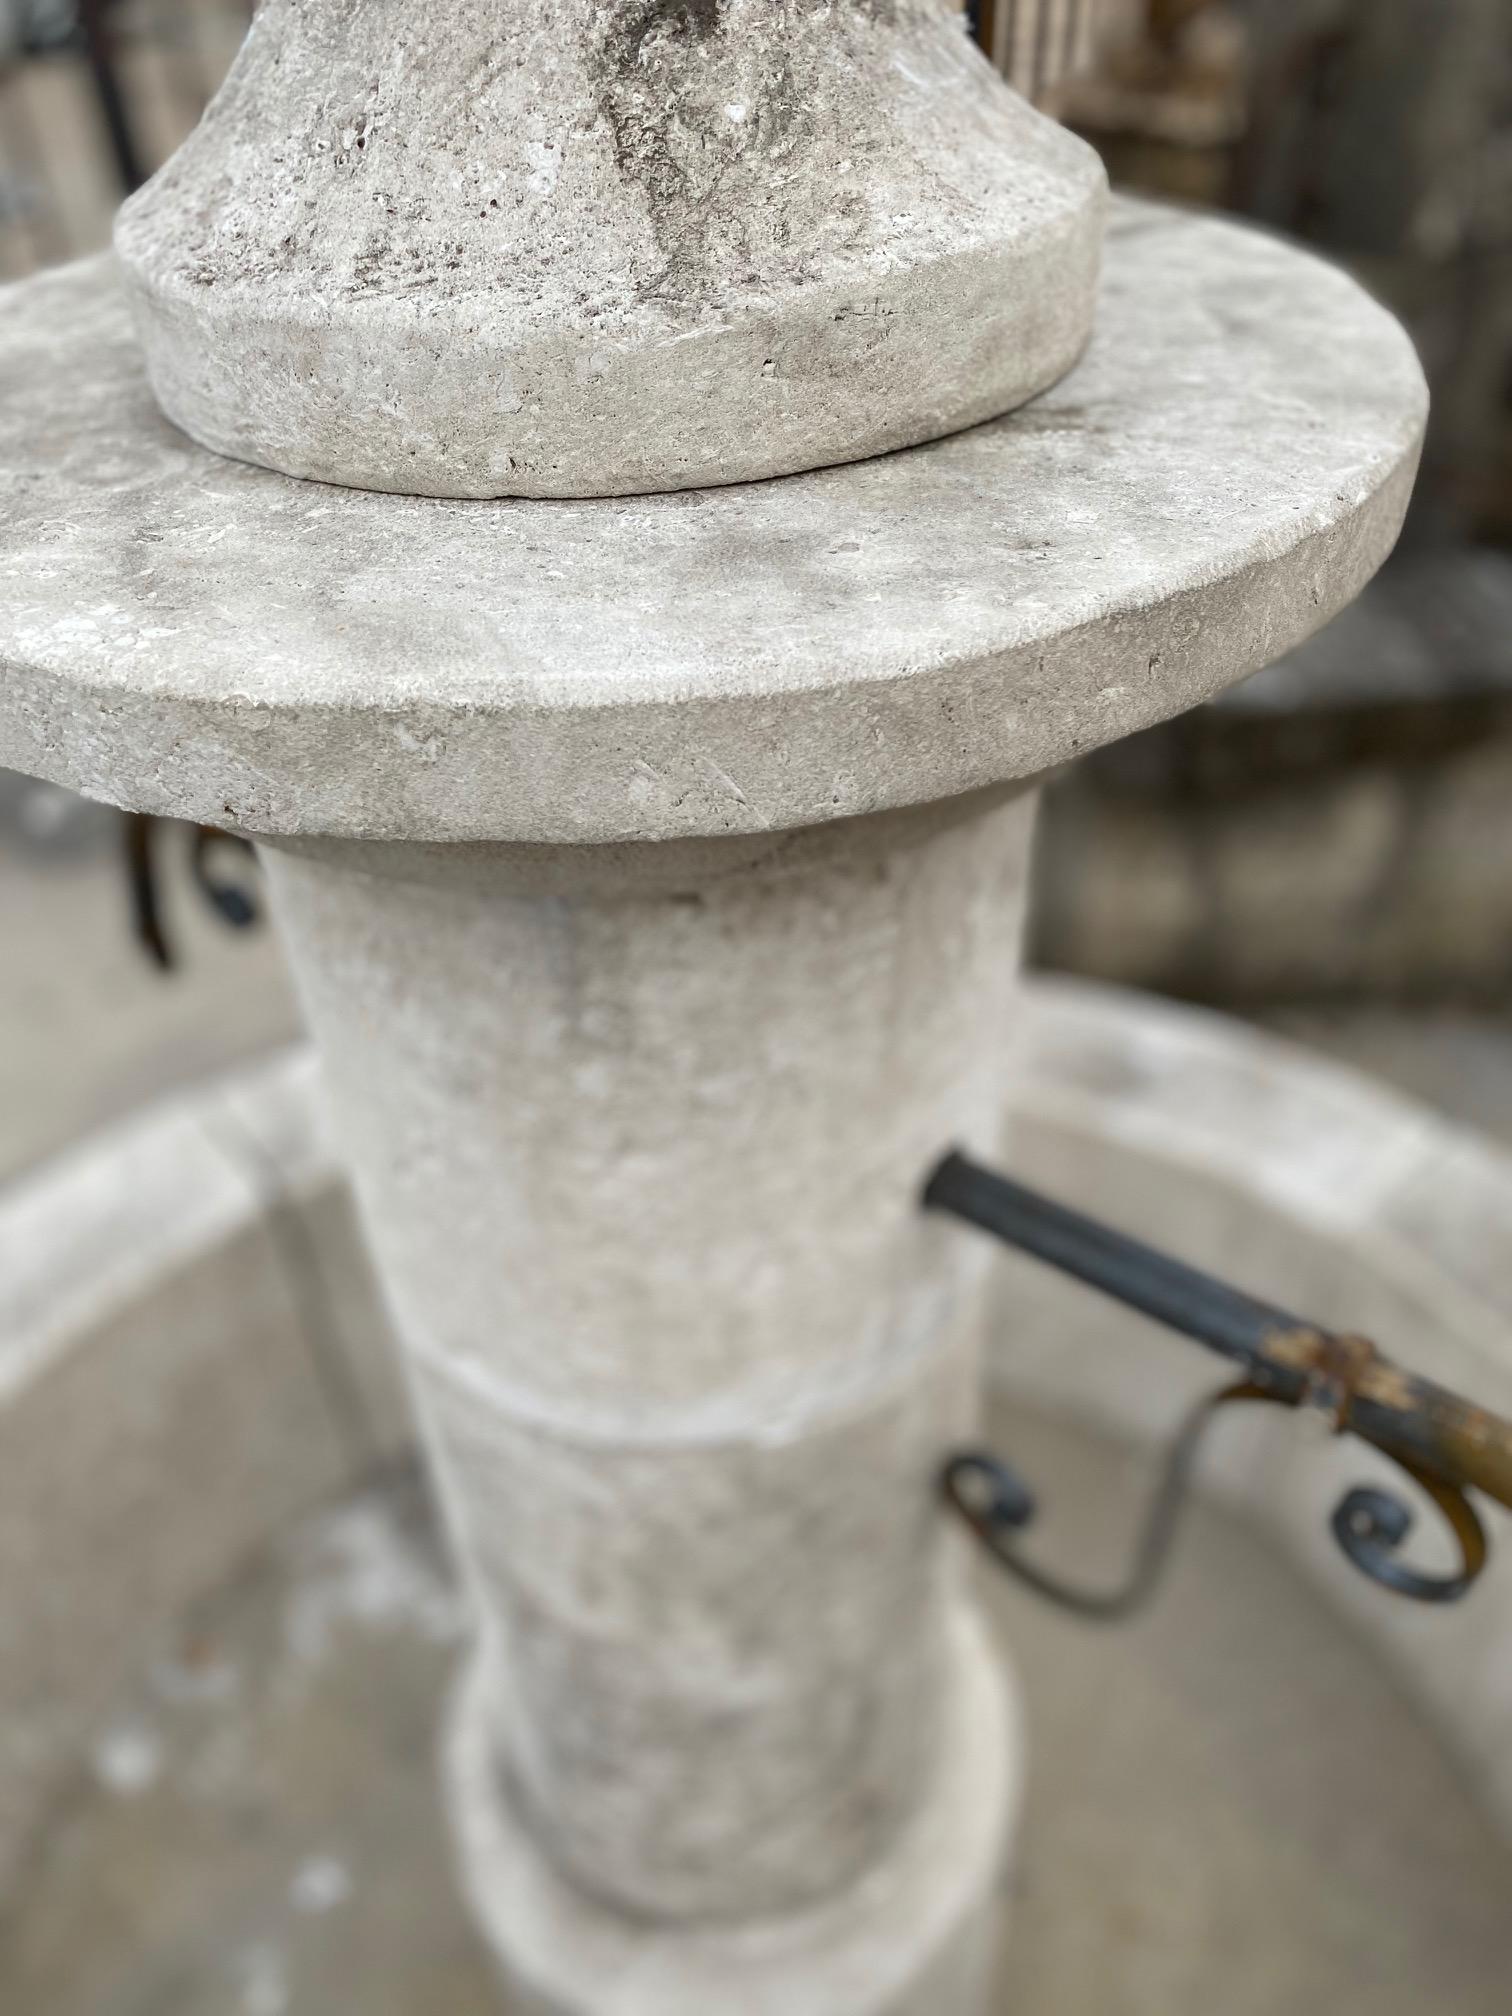 Hier bieten wir einen handgeschnitzten Kalksteinbrunnen mit zwei Messingausläufen an. Dieser Brunnen hat ein großes, tiefes Becken und verleiht Ihrem Innenhof die Akustik eines Brunnens aus der alten Welt. Das Design ist schlicht und geradlinig, so